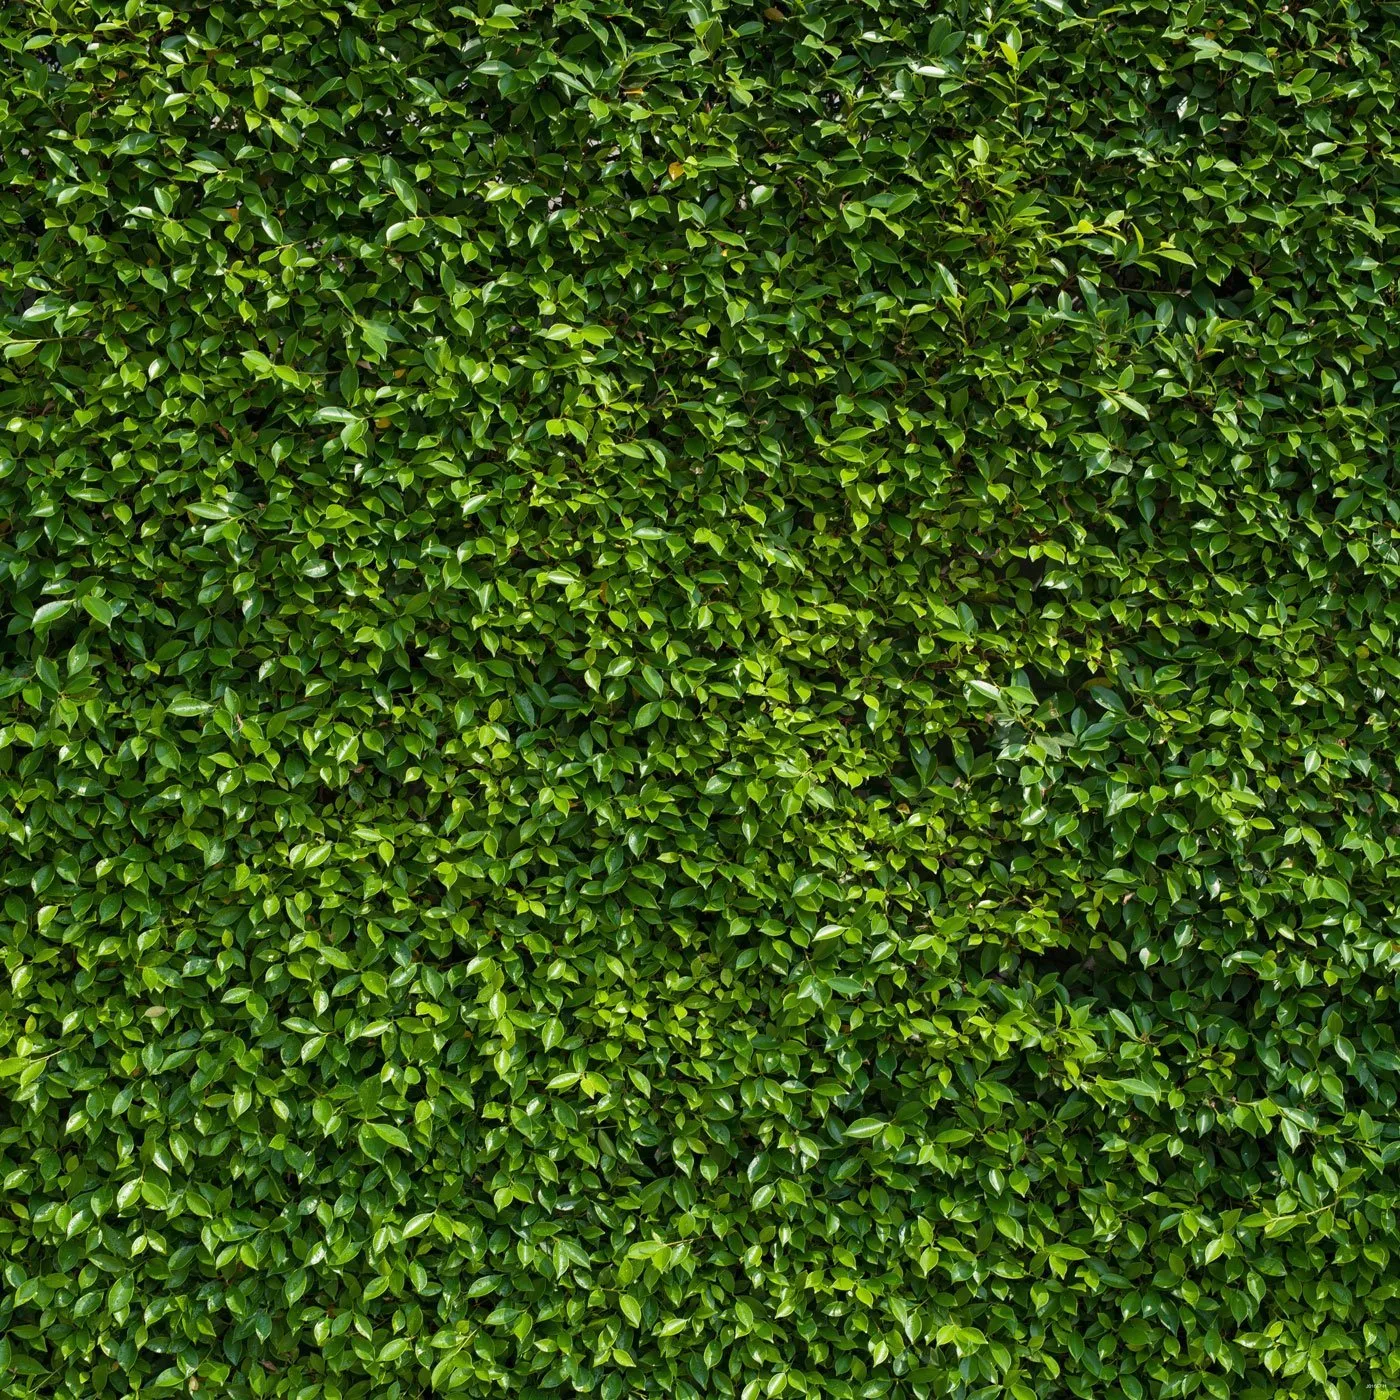 녹색 나뭇잎 벽 사진 백 드롭 비닐 봄 테마 사진 촬영 배경 어린이 초상화 스튜디오 배경 10x10ft